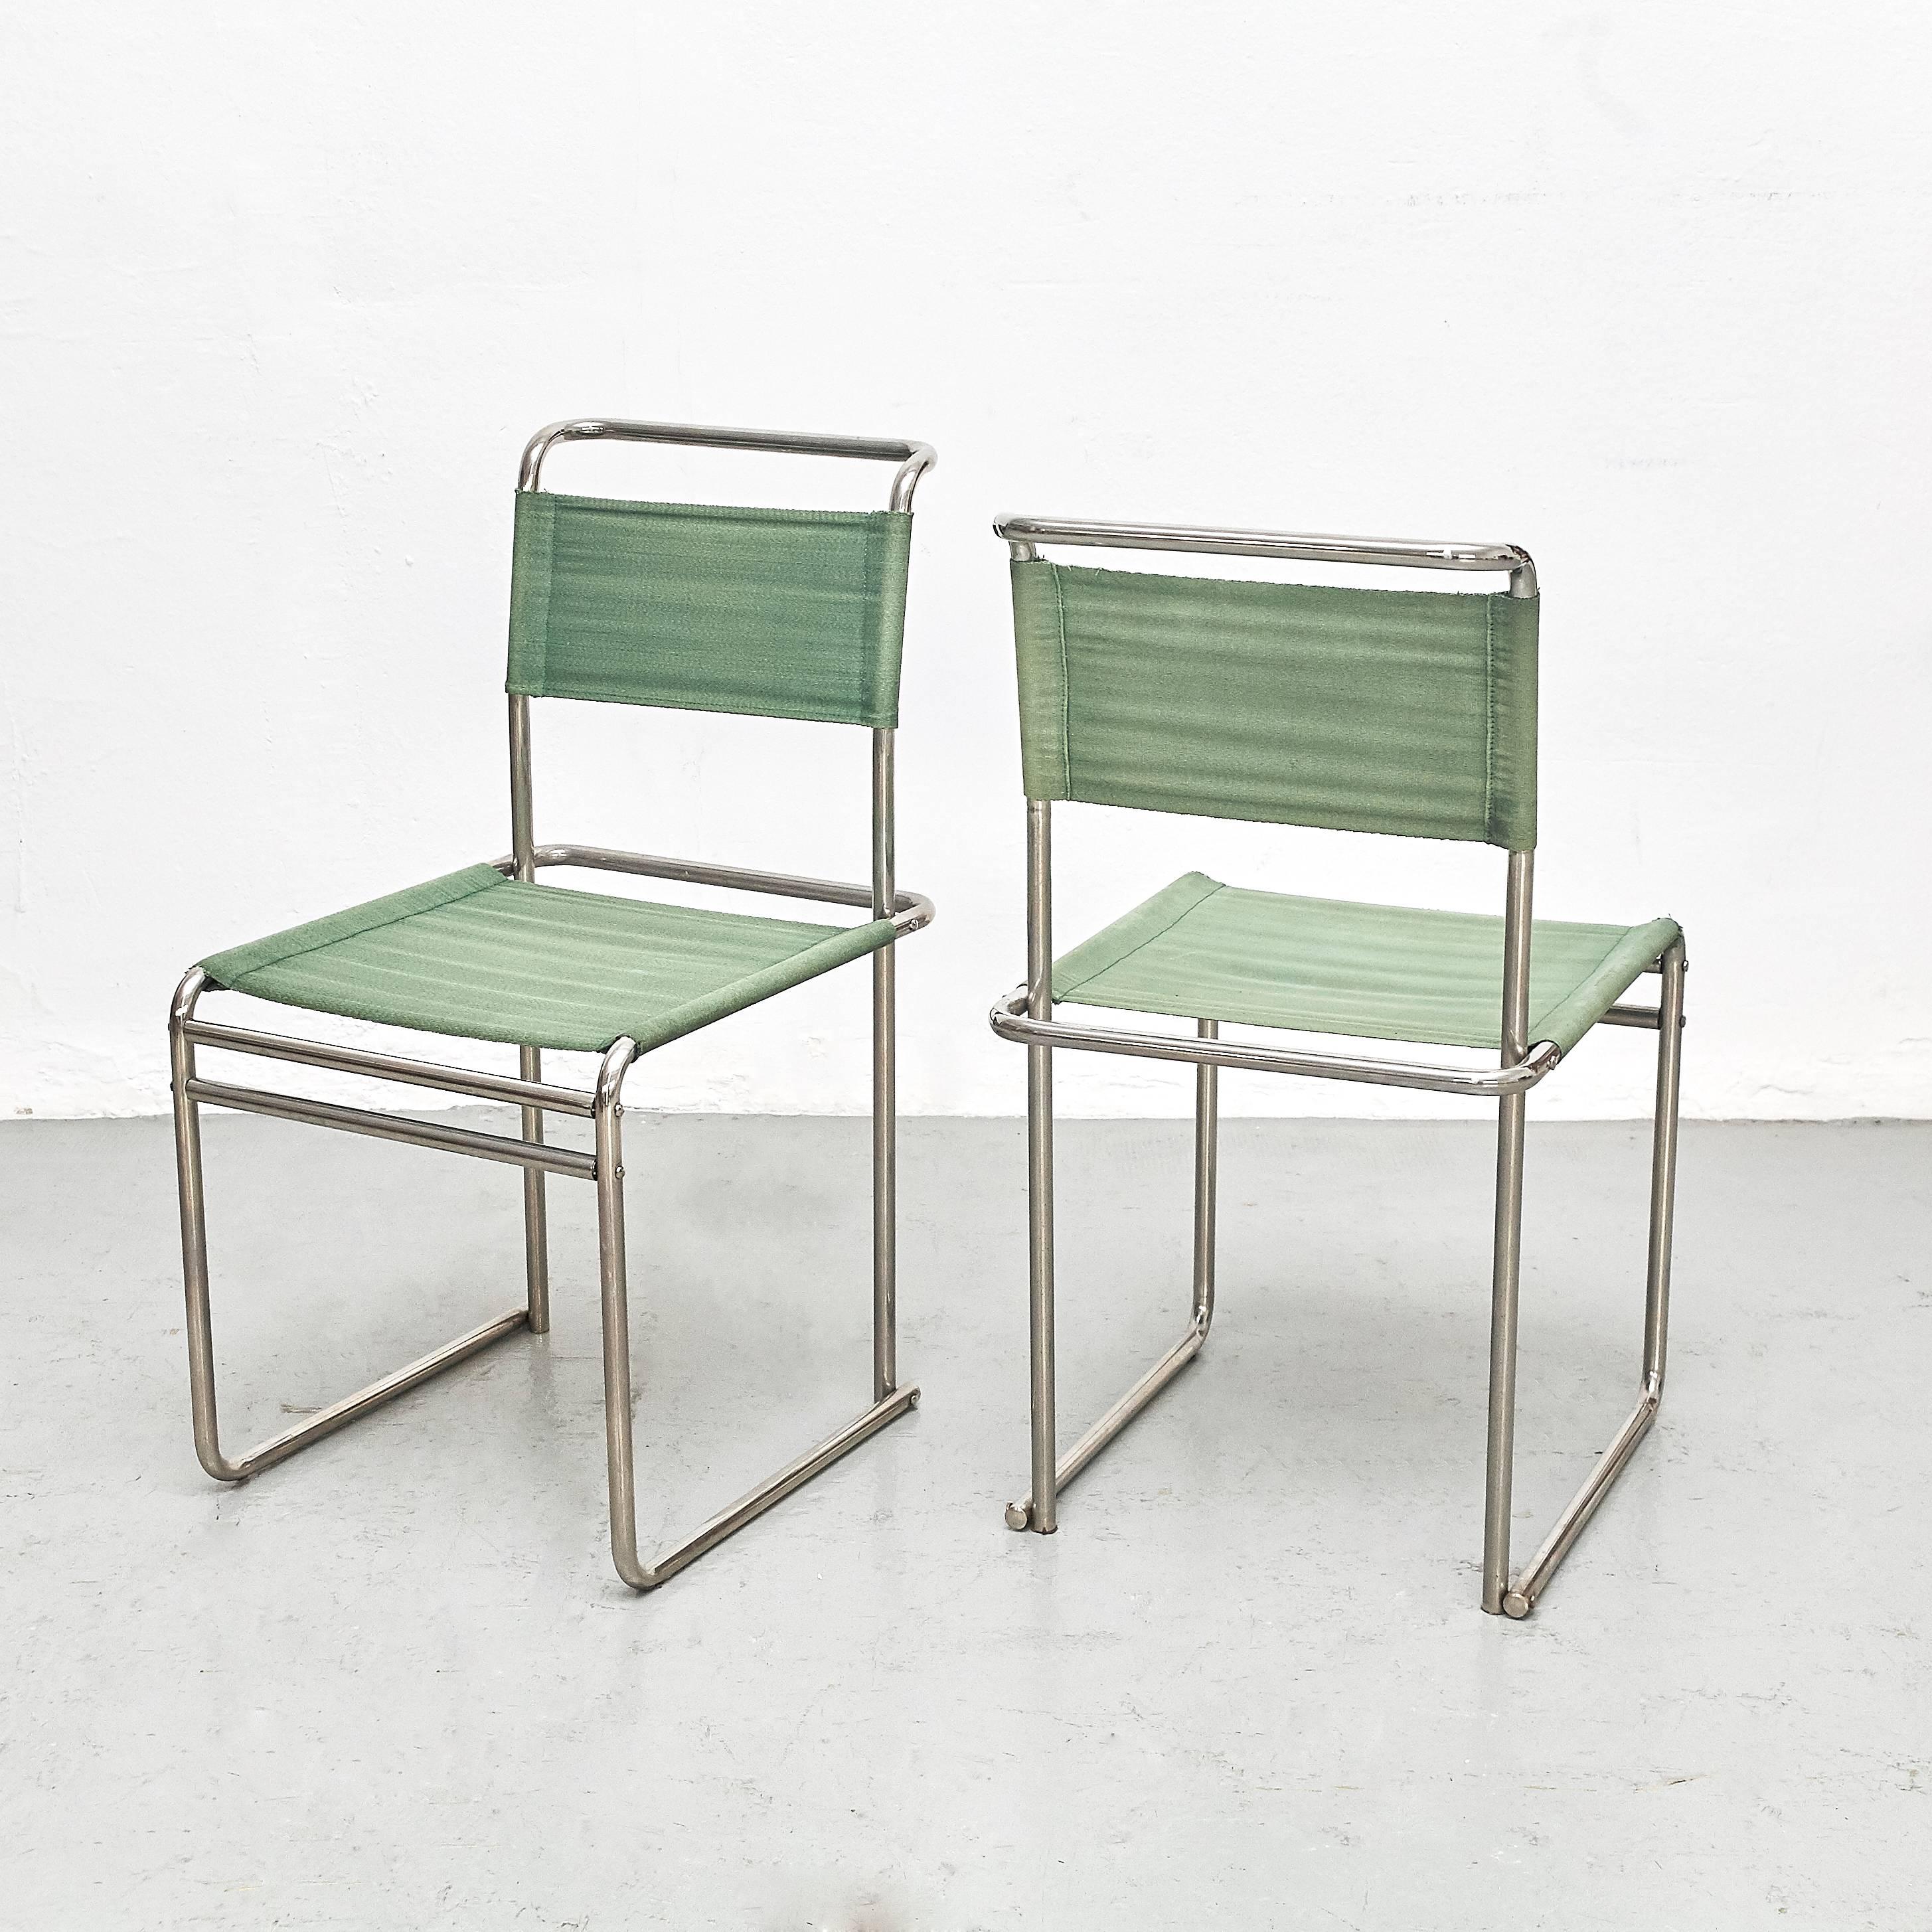 B5-Stühle, entworfen von Marcel Breuer, um 1926.
Hergestellt von Tecta um 1970.

Stahlrohr, Stoff.

In gutem Originalzustand mit geringen alters- und gebrauchsbedingten Abnutzungserscheinungen, die eine schöne Patina erhalten haben. 

Marcel Lajos